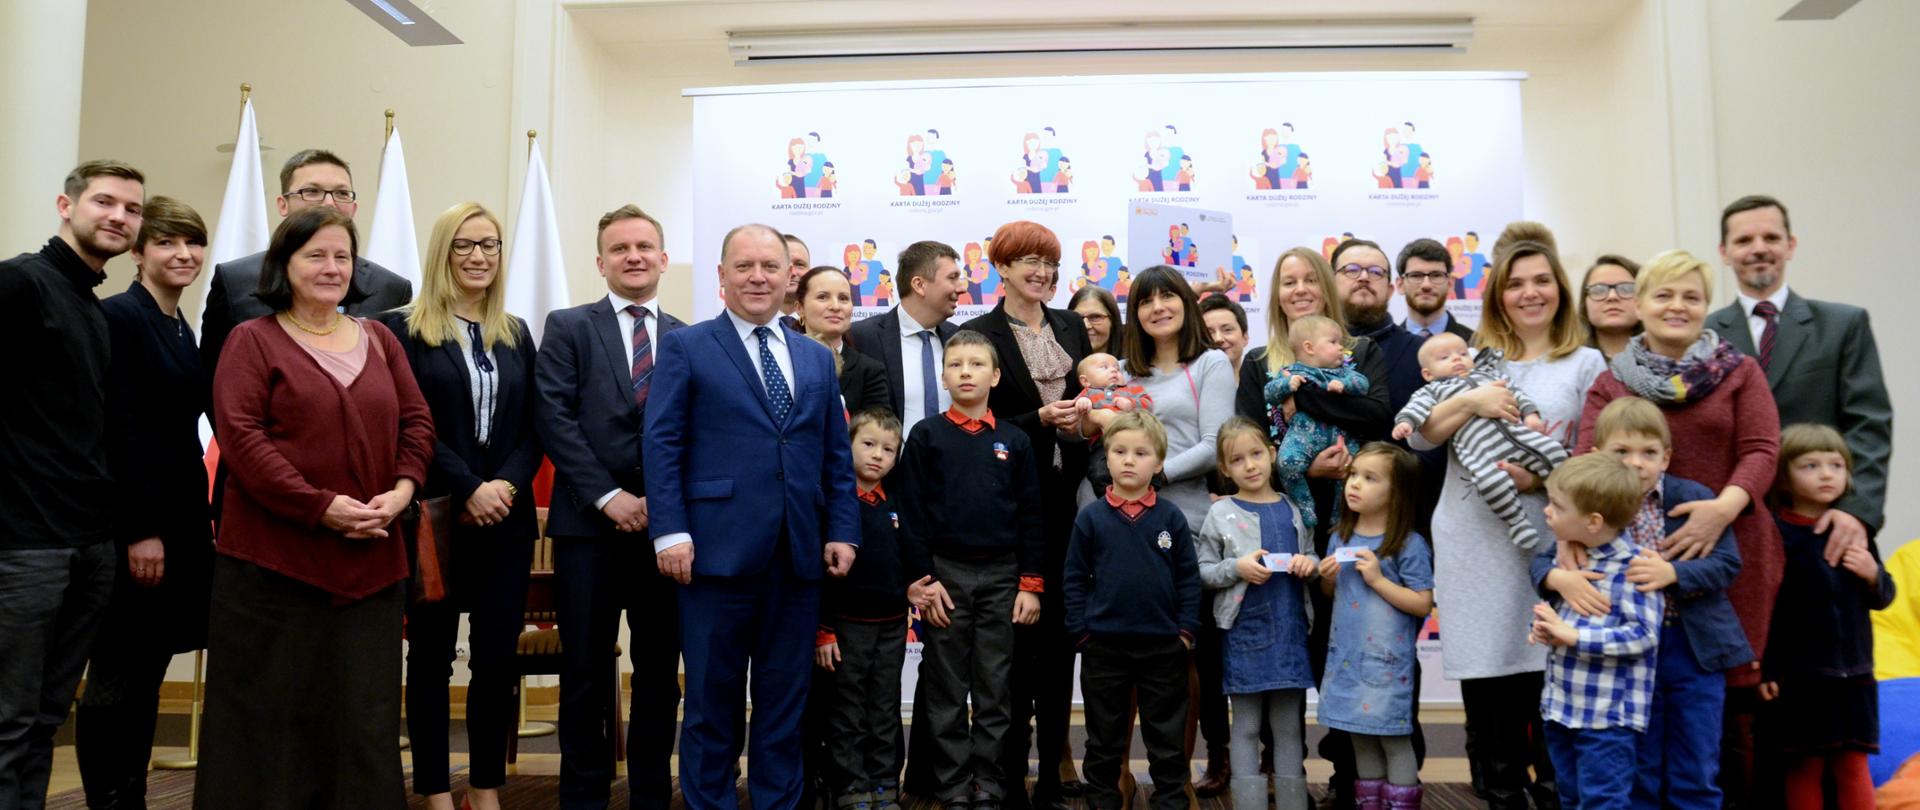 Nowe otwarcie Karty Dużej Rodziny. Wspólne zdjęcie uczestników wydarzenia, dużych rodzin, z minister rodziny Elżbietą Rafalską.